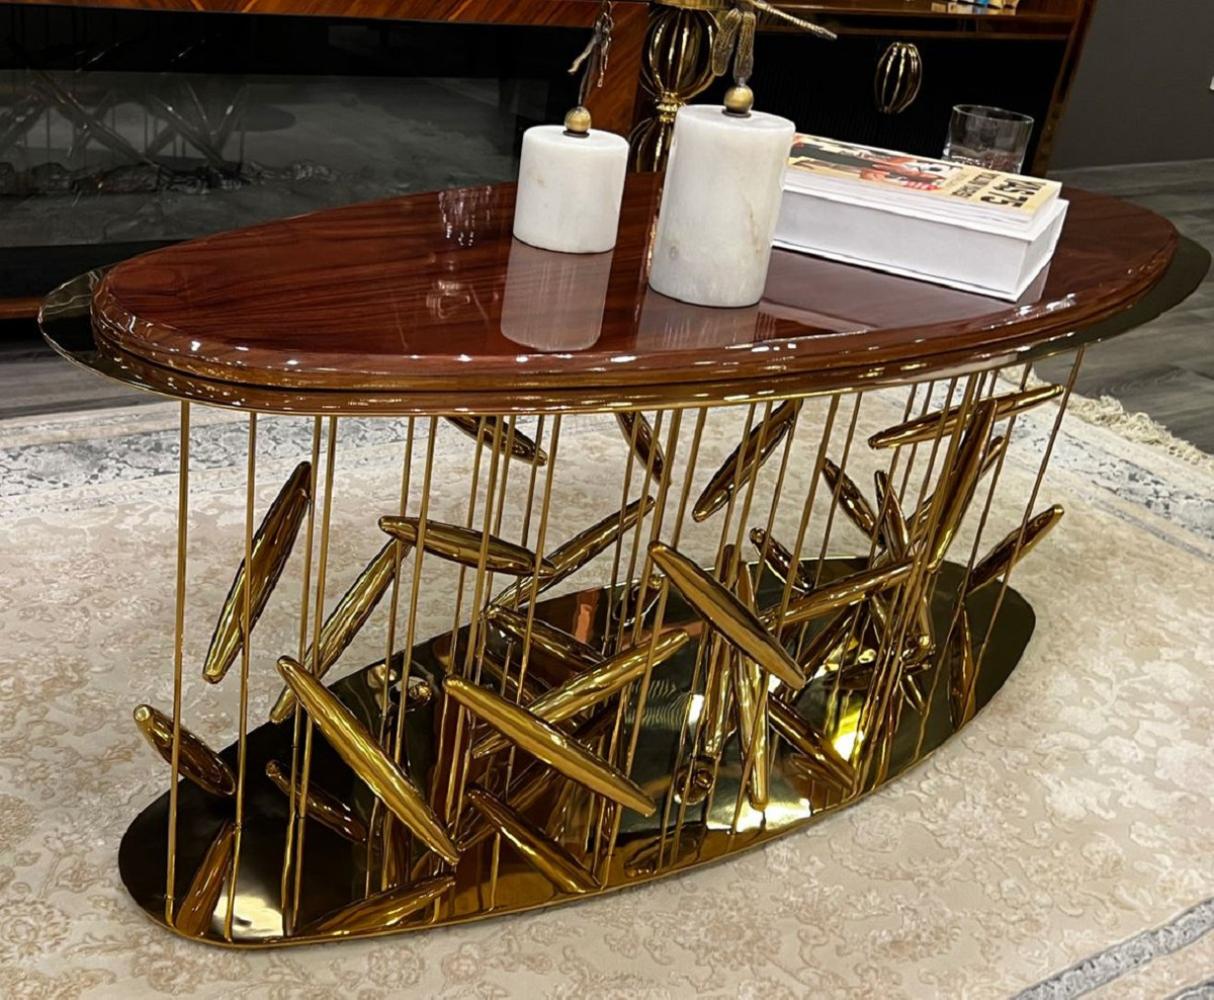 Casa Padrino Luxus Couchtisch Braun / Gold 120 x 51 x H. 47 cm - Ovaler Edelstahl Wohnzimmertisch mit Massivholz Tischplatte - Wohnzimmer Möbel - Hotel Möbel - Luxus Möbel Bild 1